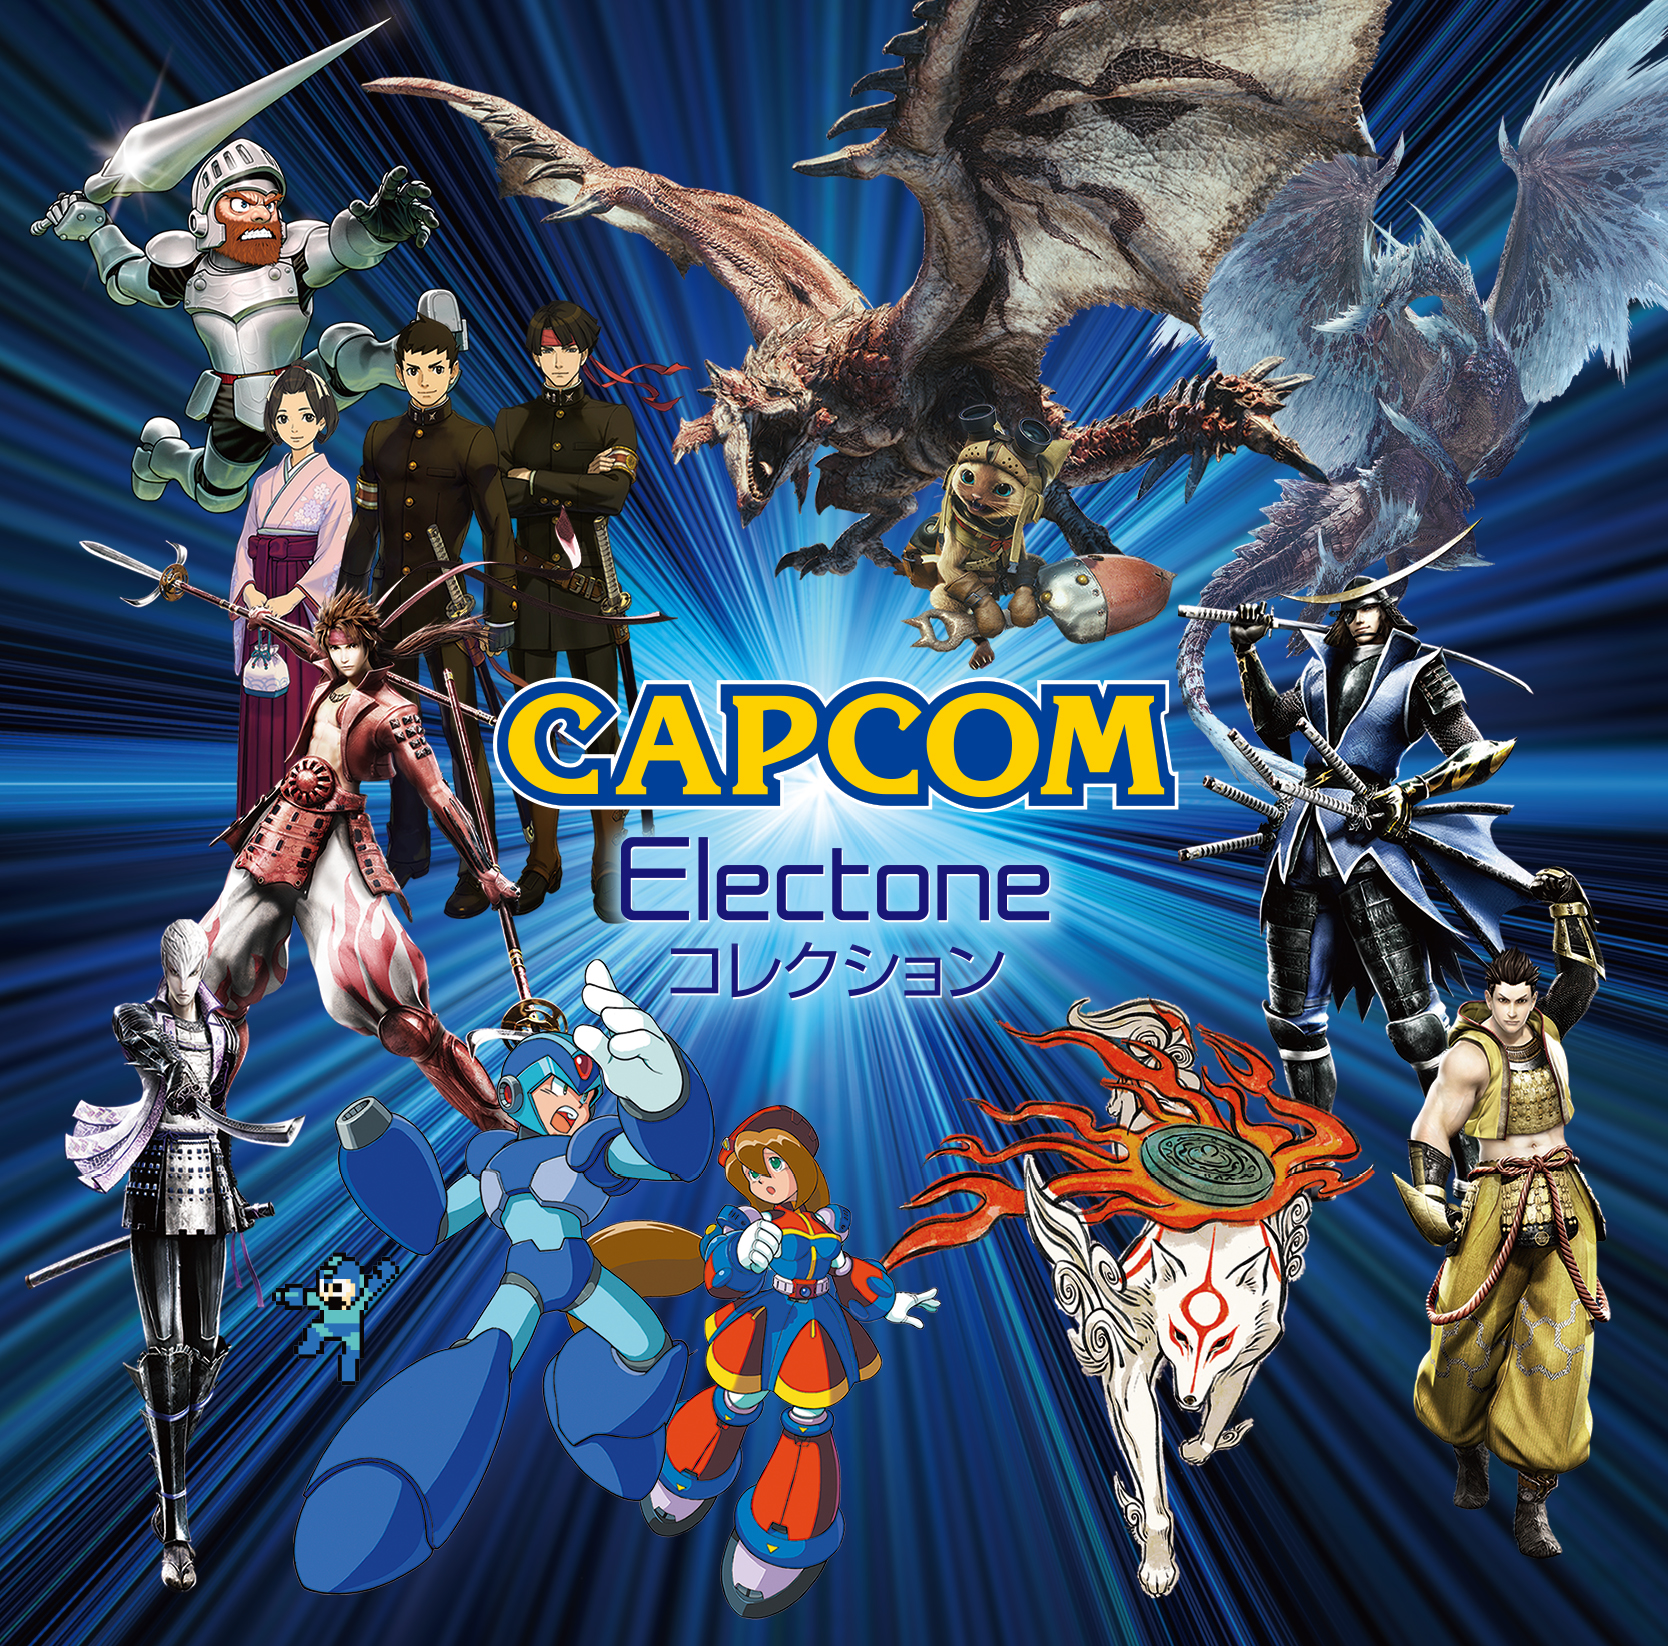 Capcomの人気ゲームより厳選された楽曲を エレクトーンプレイヤーが演奏するcd Capcom Electone コレクション 発売が決定 さらにコンサートも決定 ヤマハミュージックエンタテインメントホールディングスのプレスリリース